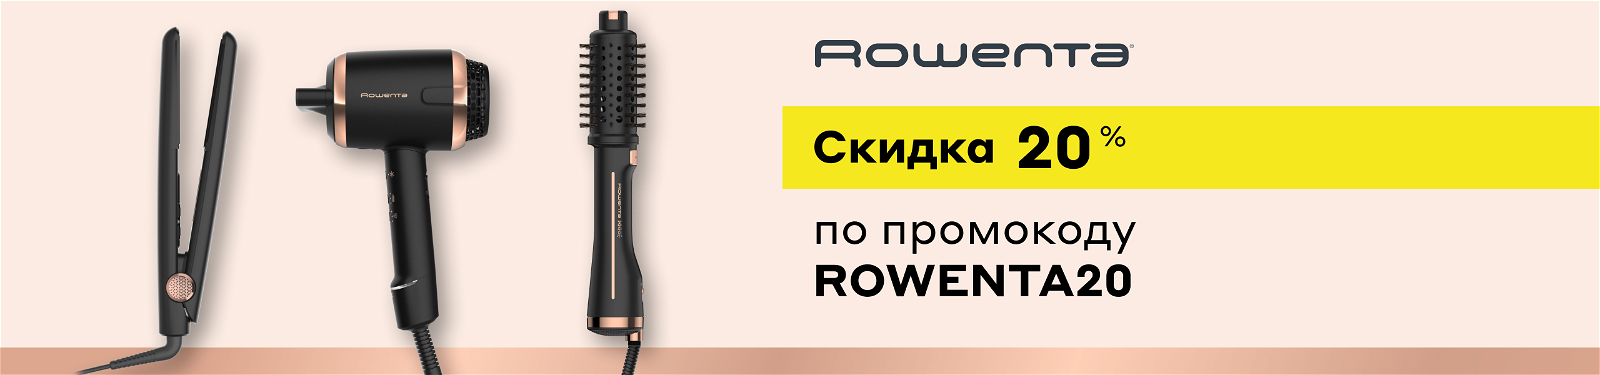 Скидка 20% на товары Rowenta